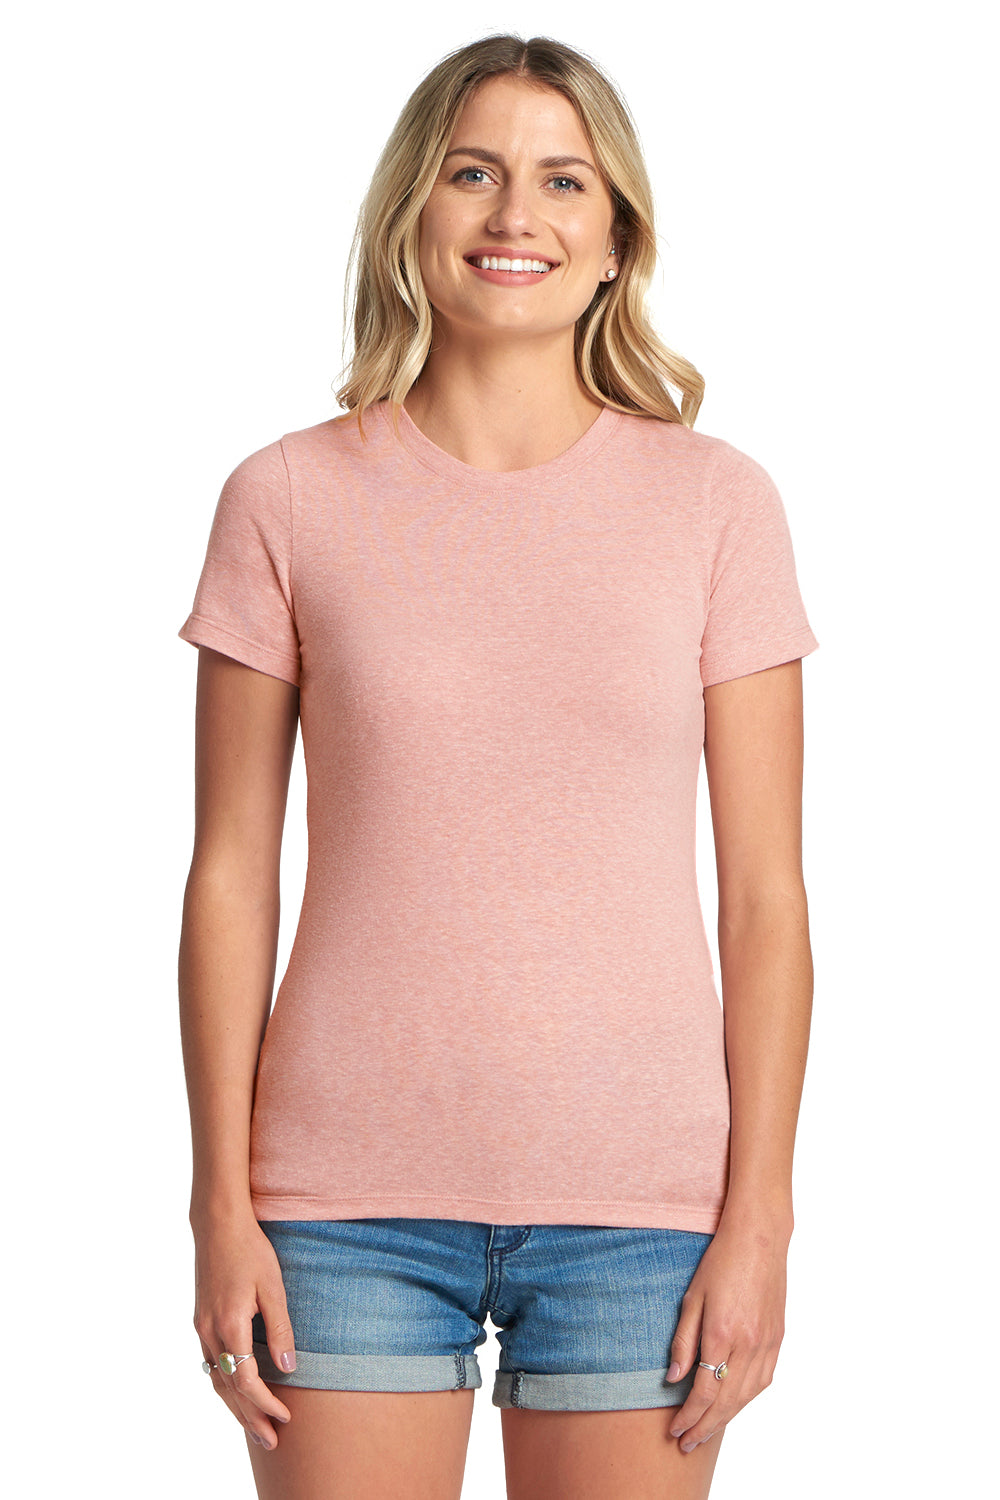 Next Level 6710 Jersey Short Sleeve Crewneck T-Shirt Desert Pink Front